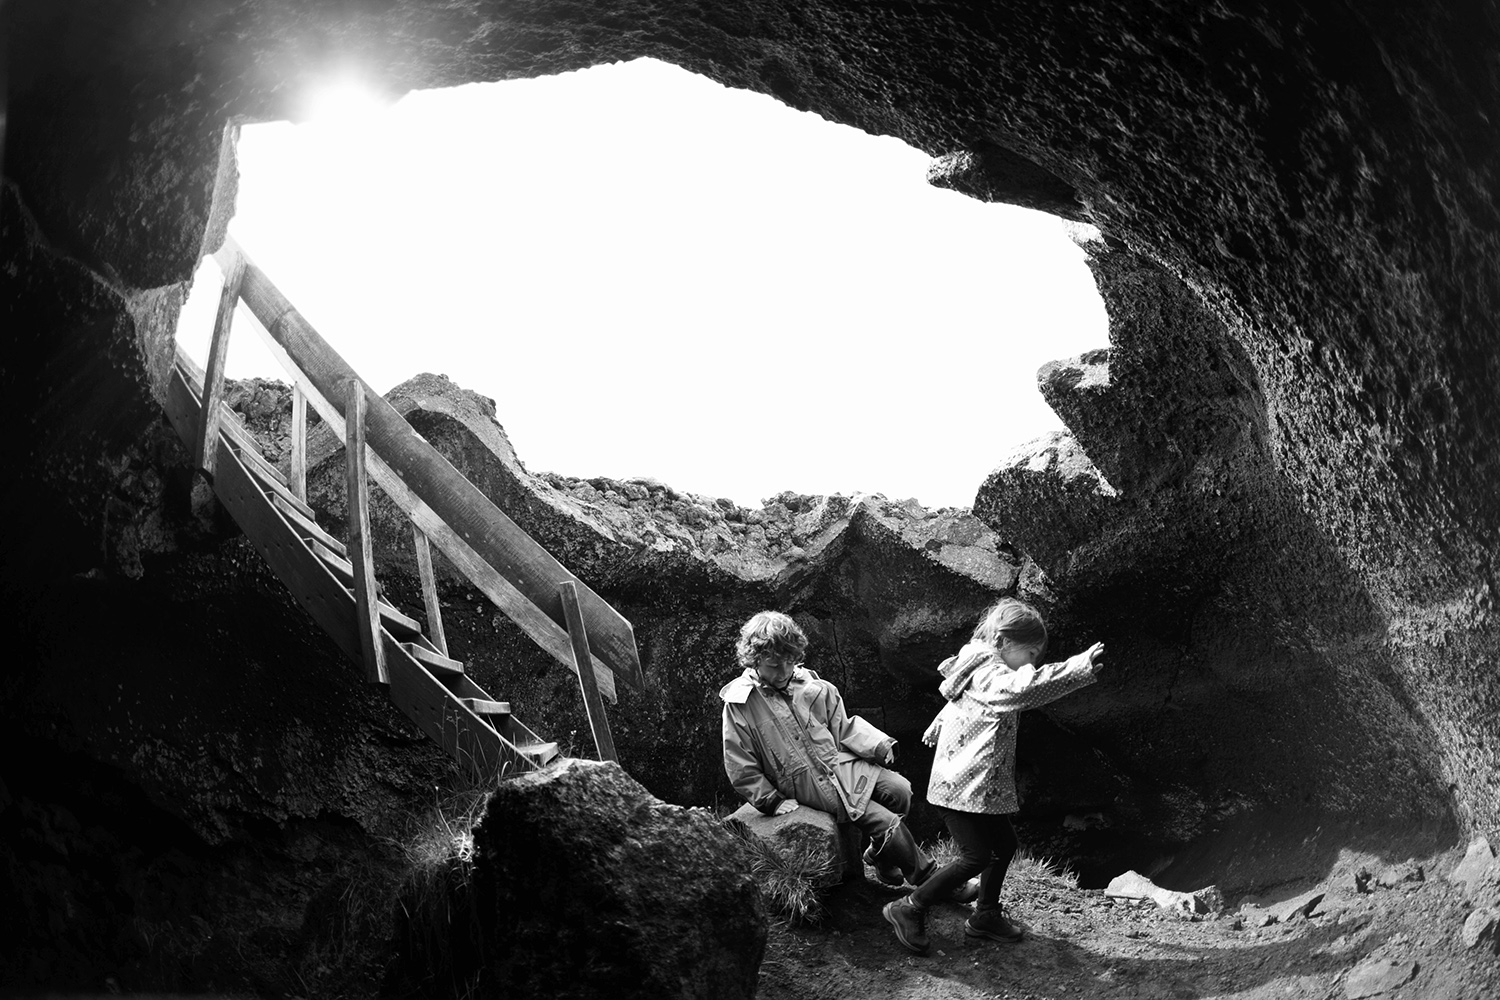 Children playing underground in Iceland